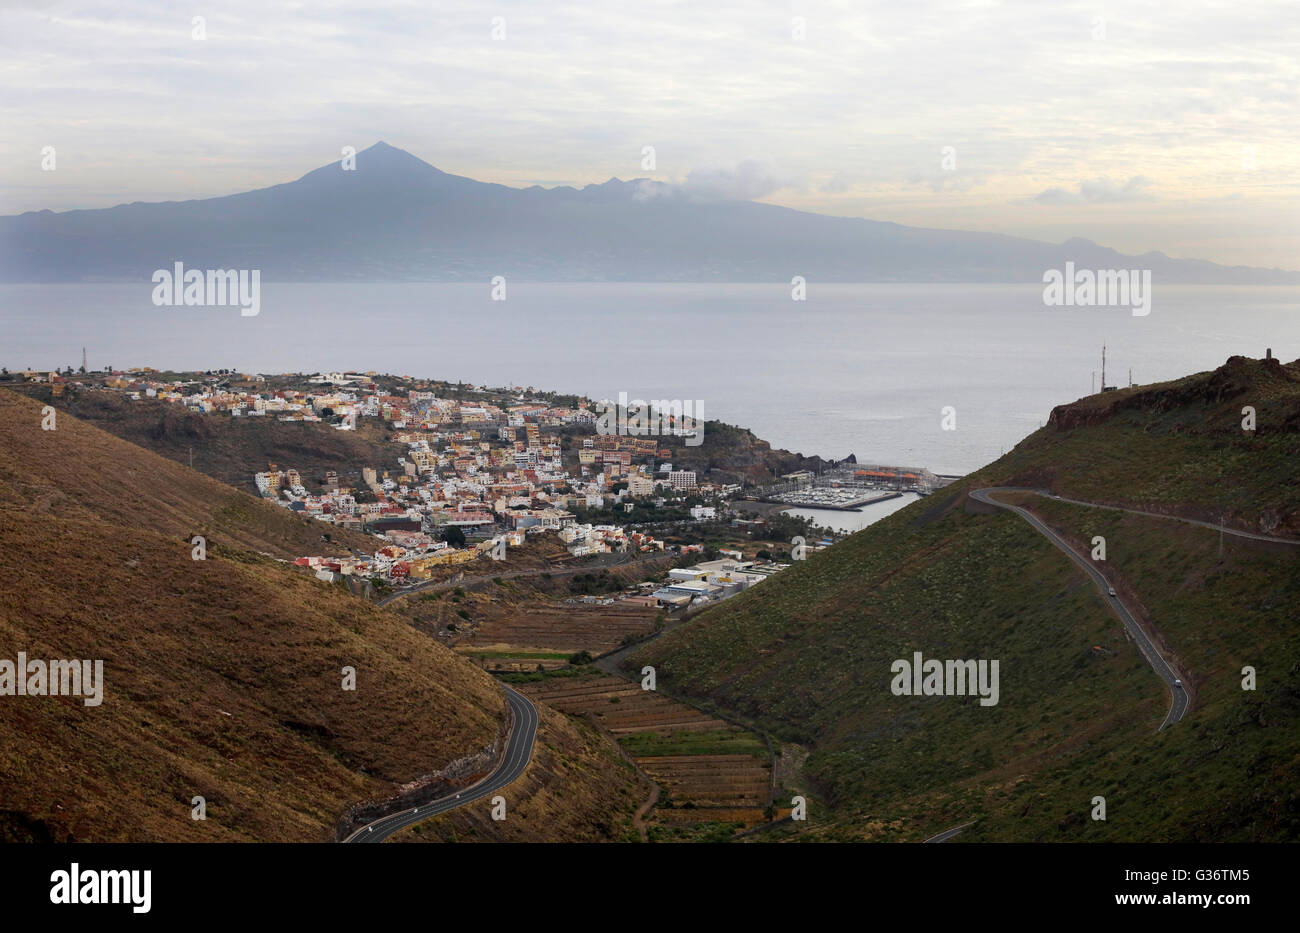 La Gomera. La capitale dell'isola, San Sebastian de la Gomera, con il Pico del Teide (Mount Teide) su Tenerife a distanza Foto Stock